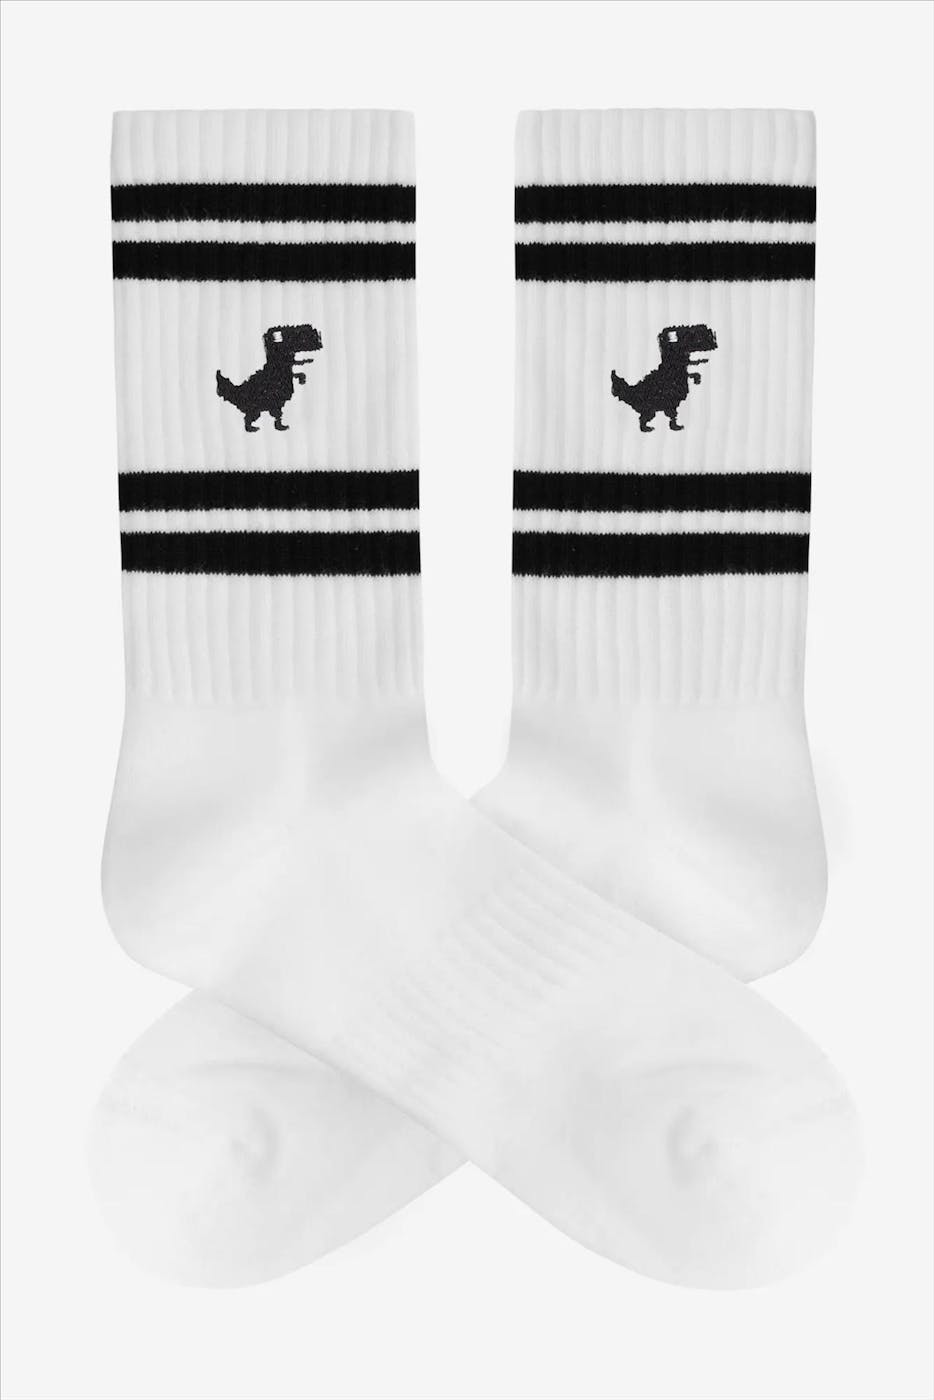 A'dam - Witte Reno Dino sokken, maat: 41-46